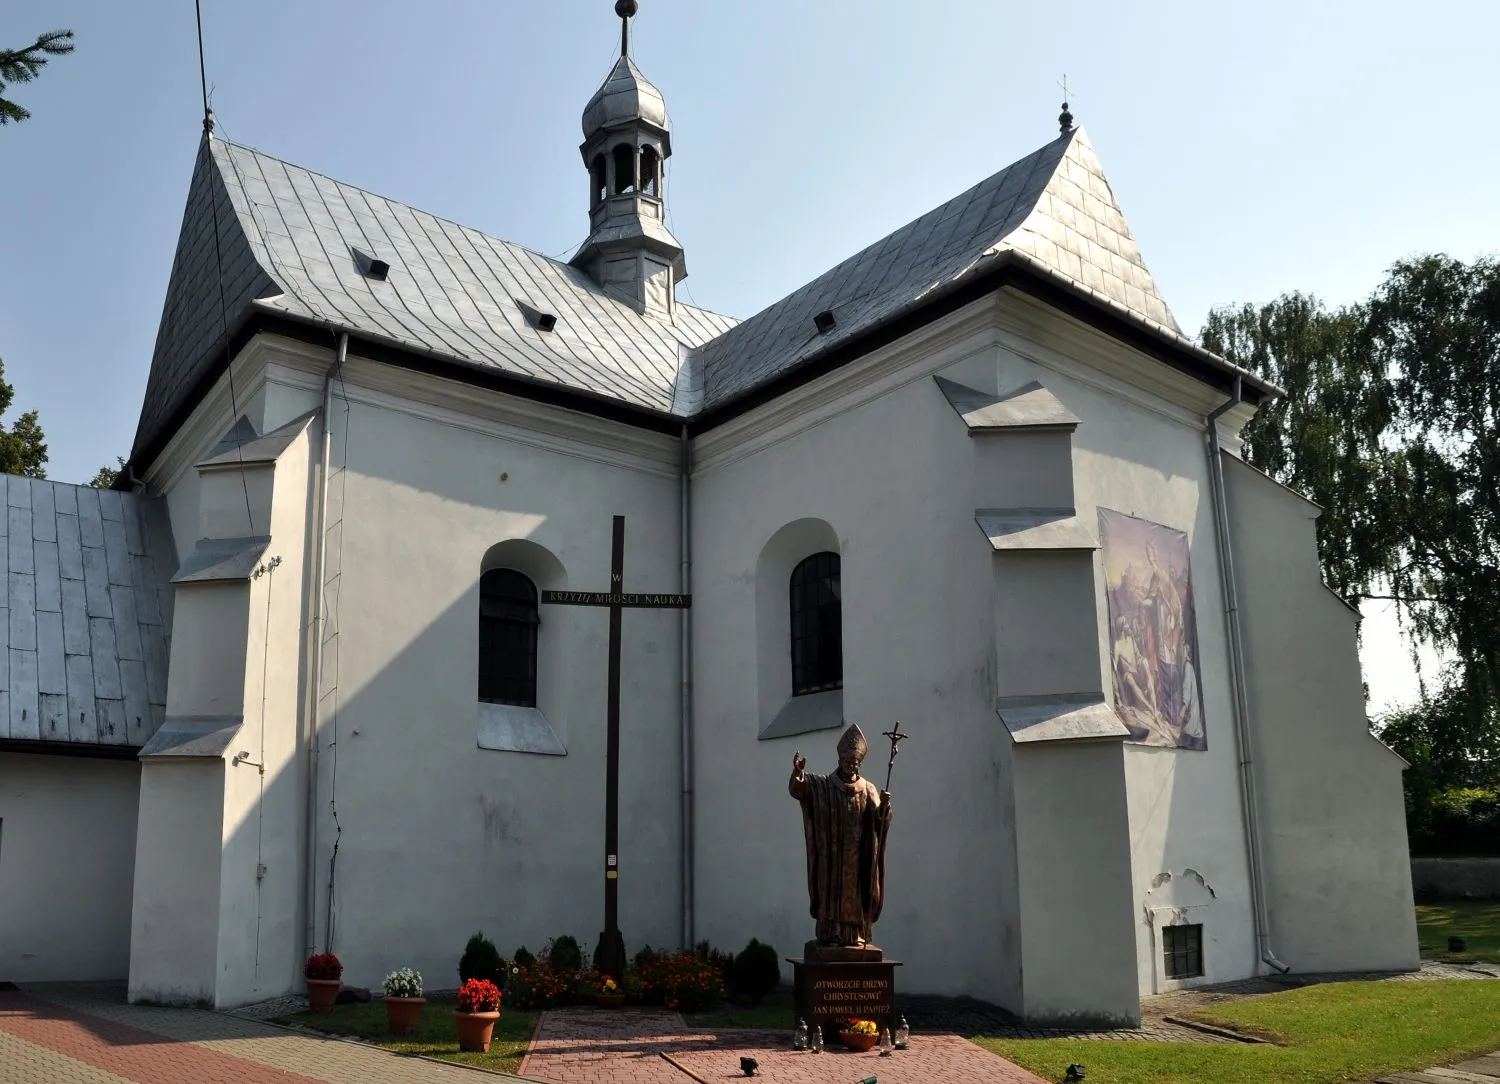 Photo showing: Sobków - dawny zbór kalwiński ufundowany około 1560 roku przez Stanisława Sobka z Sułowa